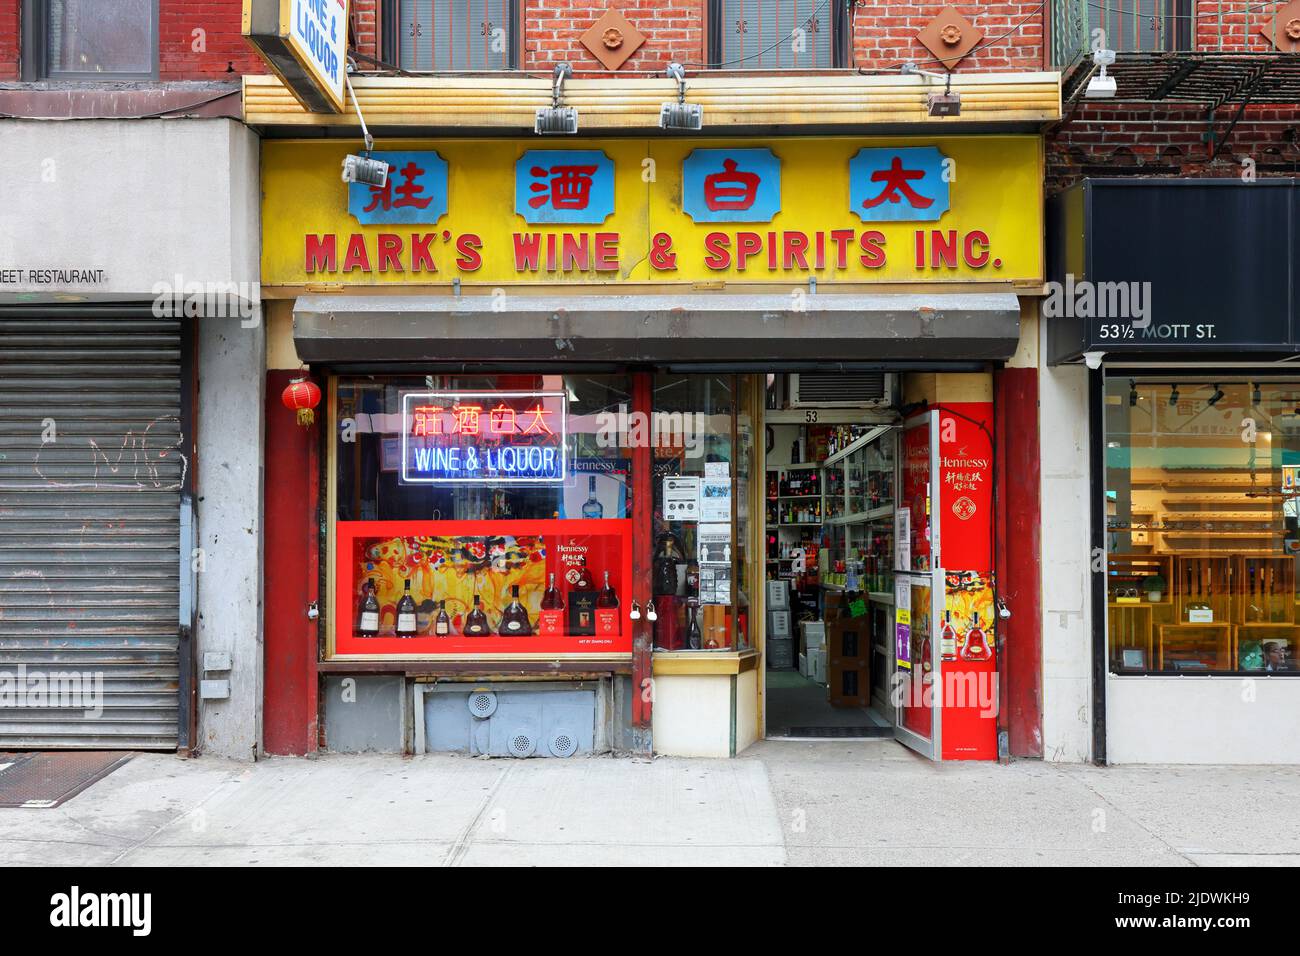 Mark's Wine & Spirits 太白酒莊, 53 Mott St, New York, NYC storefront photo of a liquor store in Manhattan Chinatown. Stock Photo